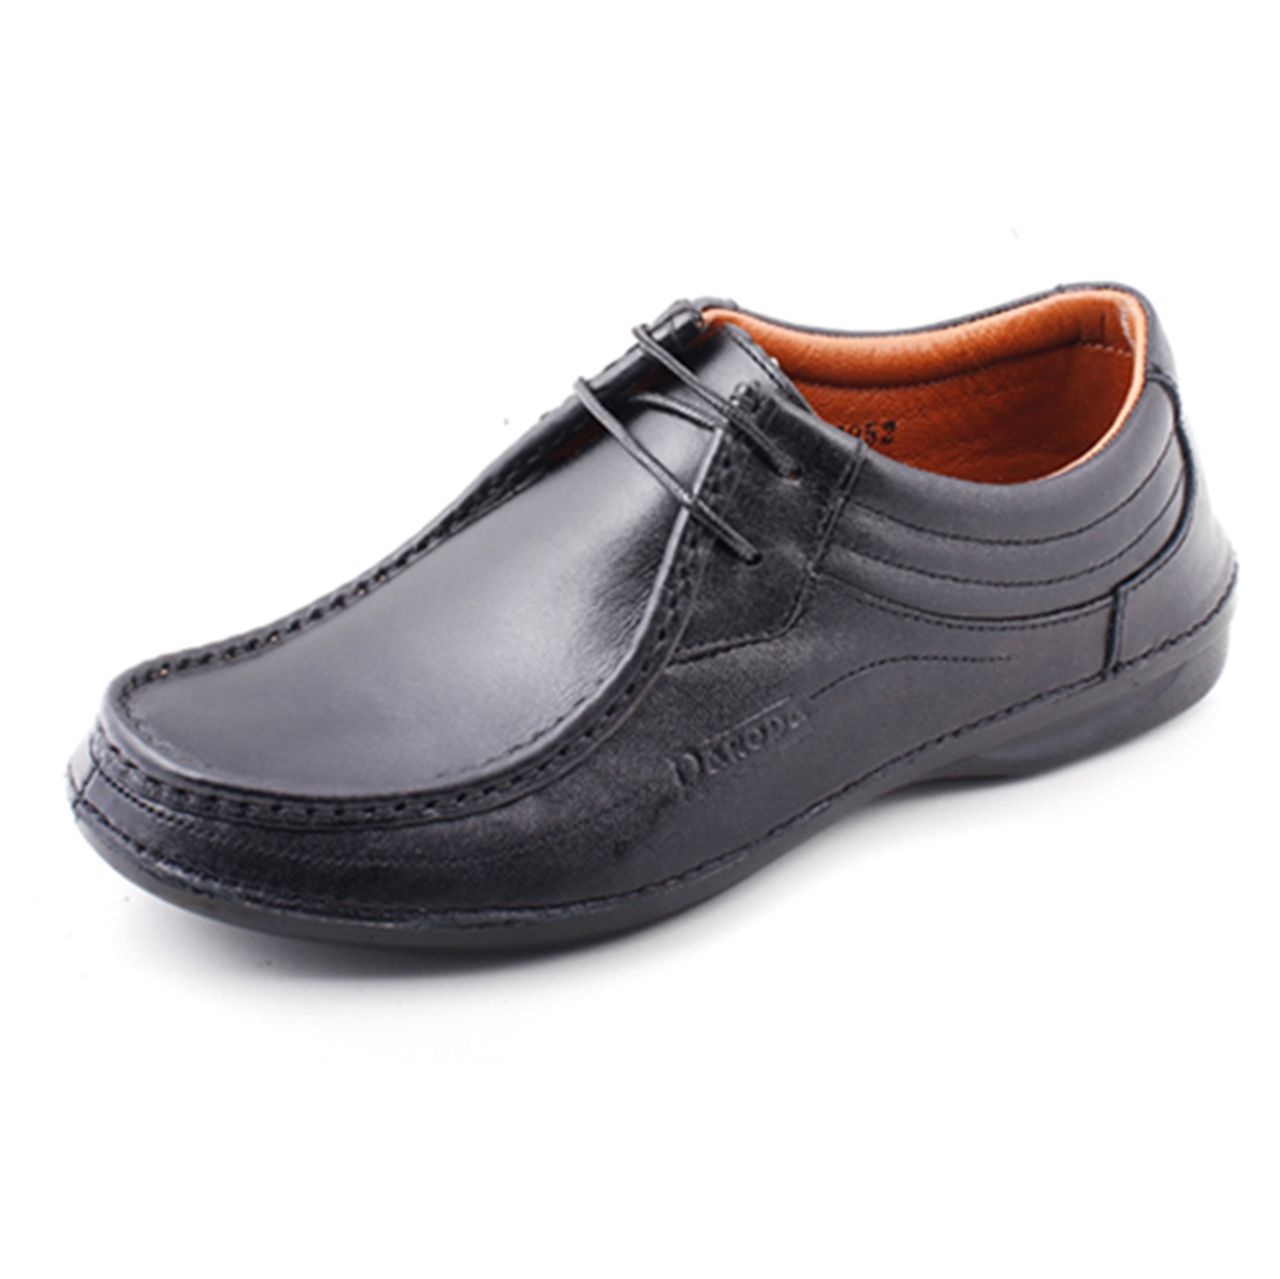 کفش مردانه پاروپا مدل اسپاک کد50516501650